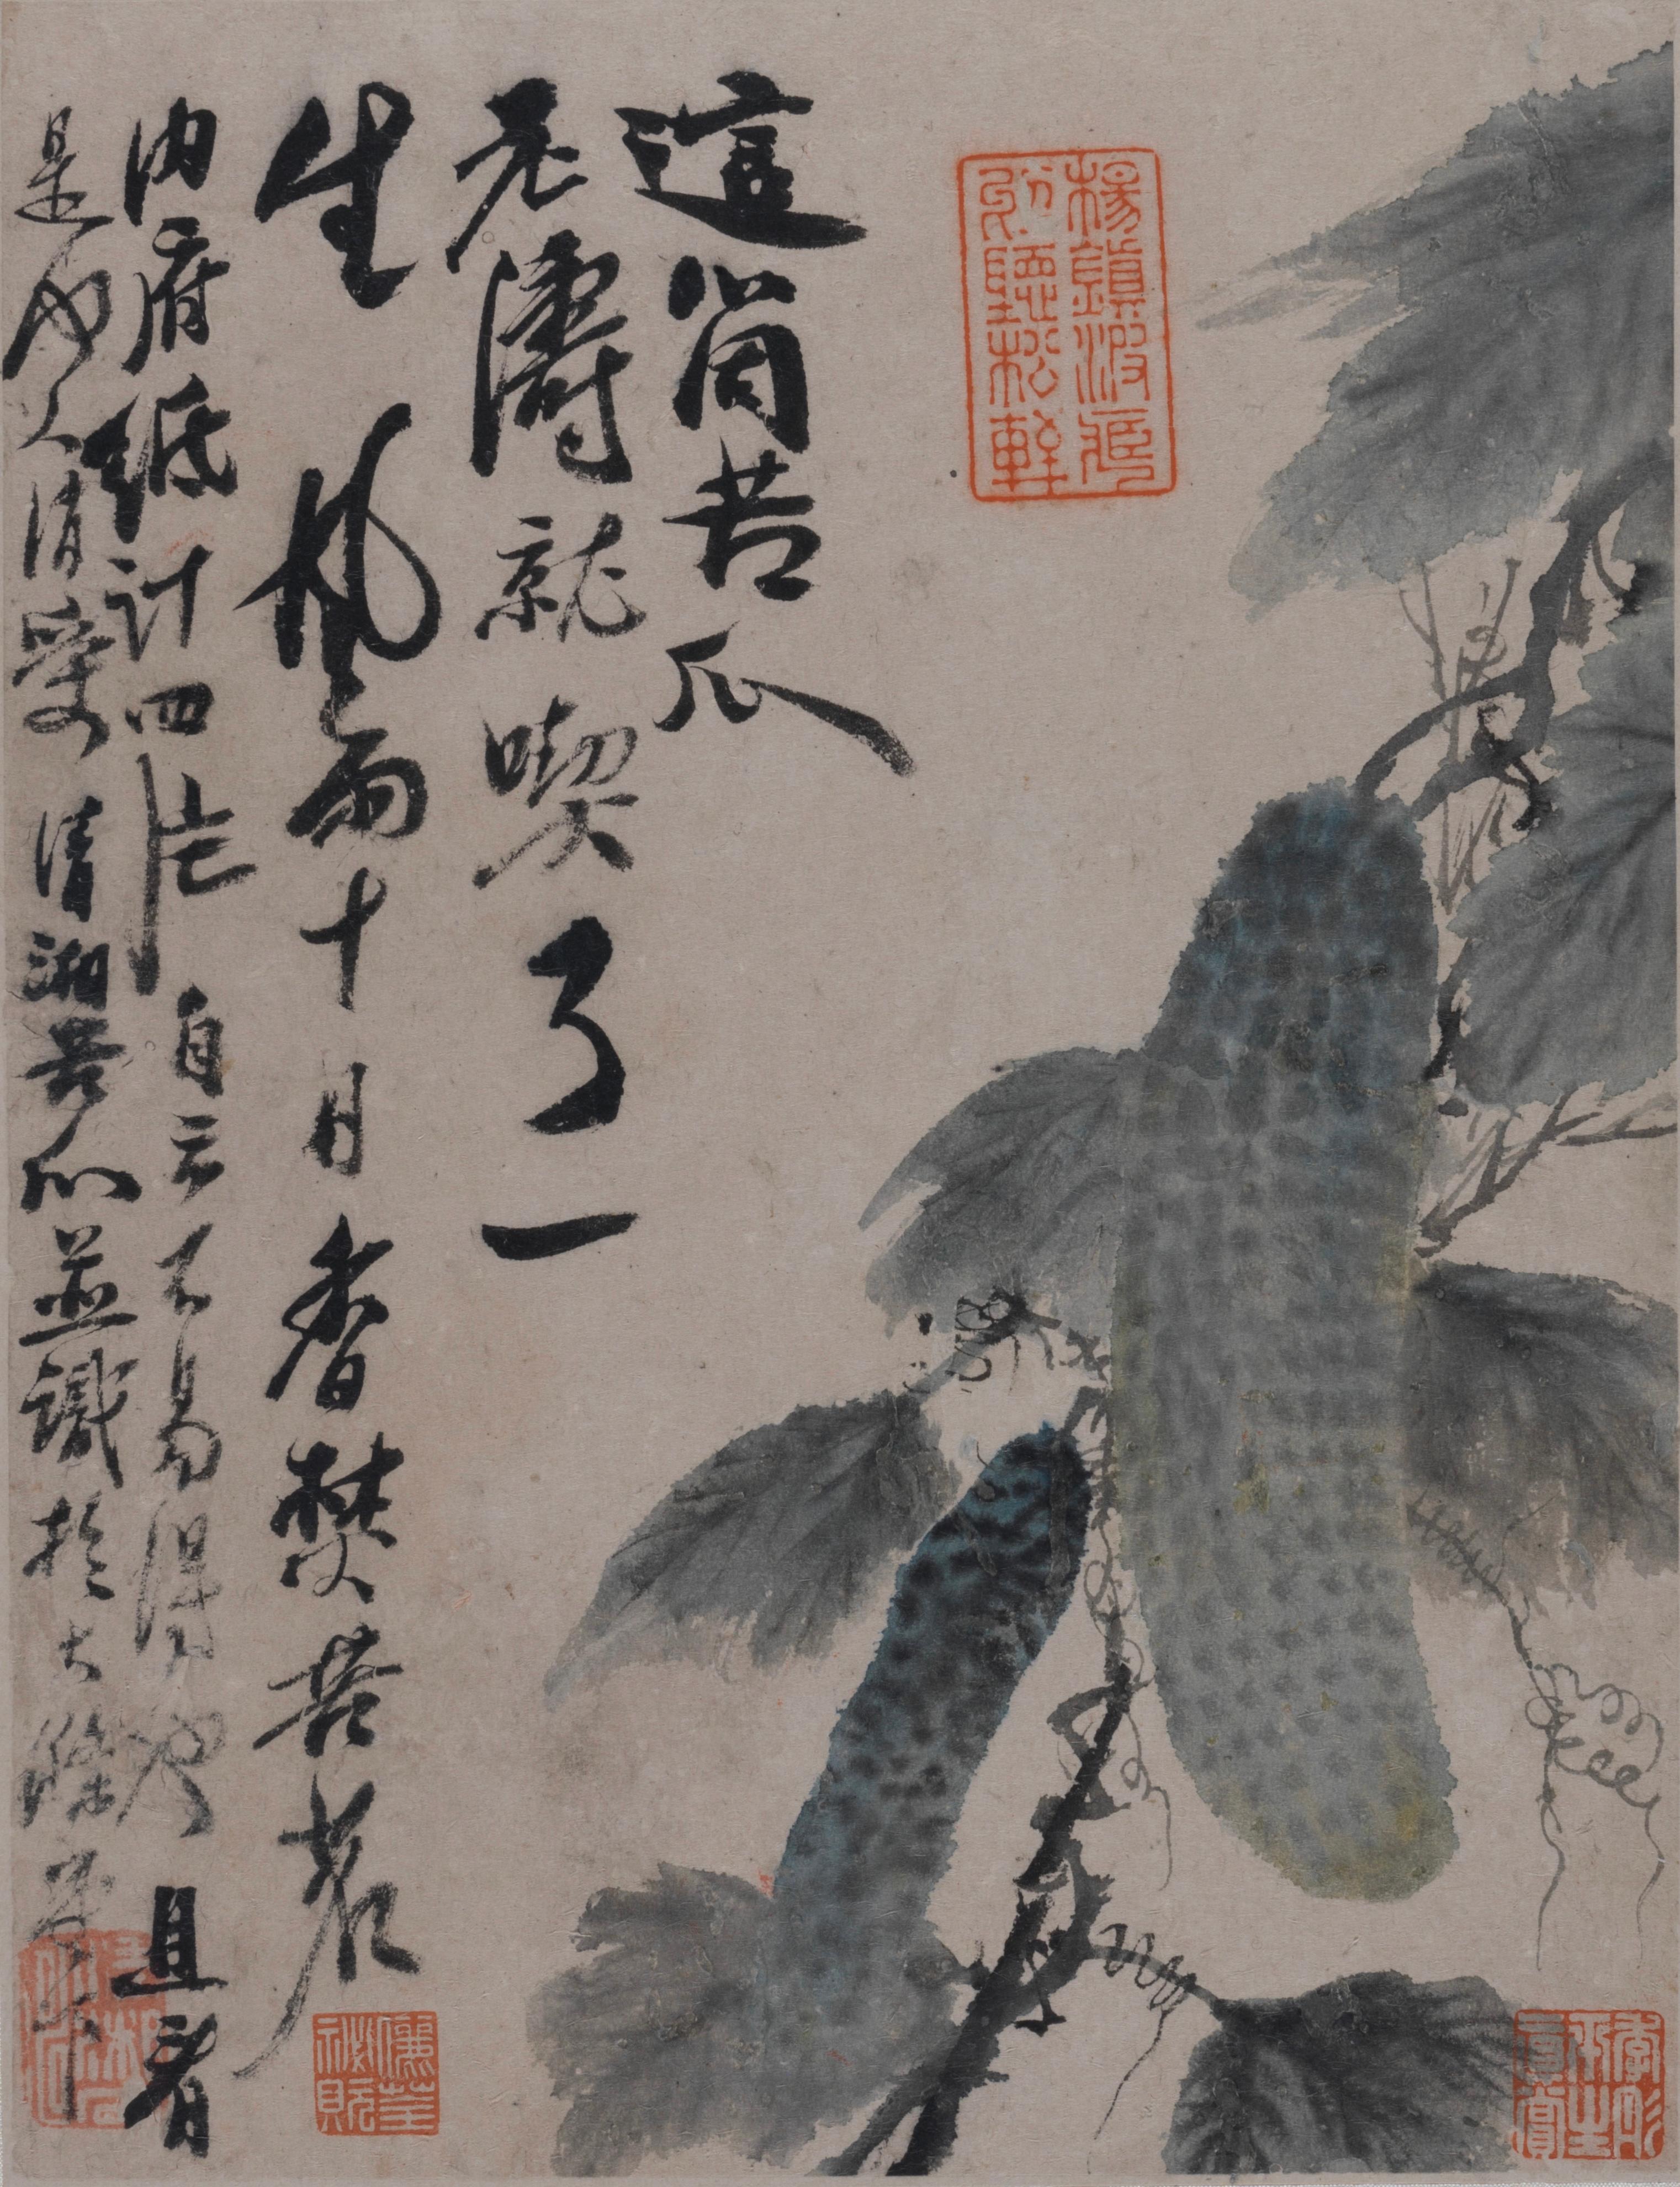 香港藝術館舉辦展覽「另眼相看──中國書畫的裝裱與保護」，透過藝術與科學的角度，分析和拆解中國書畫，讓市民窺探博物館幕後的修復和保護工作。展覽今日（三月二十二日）起在香港藝術館展出。圖示石濤（1642－1707）的《蔬果冊》（四開冊之一）。